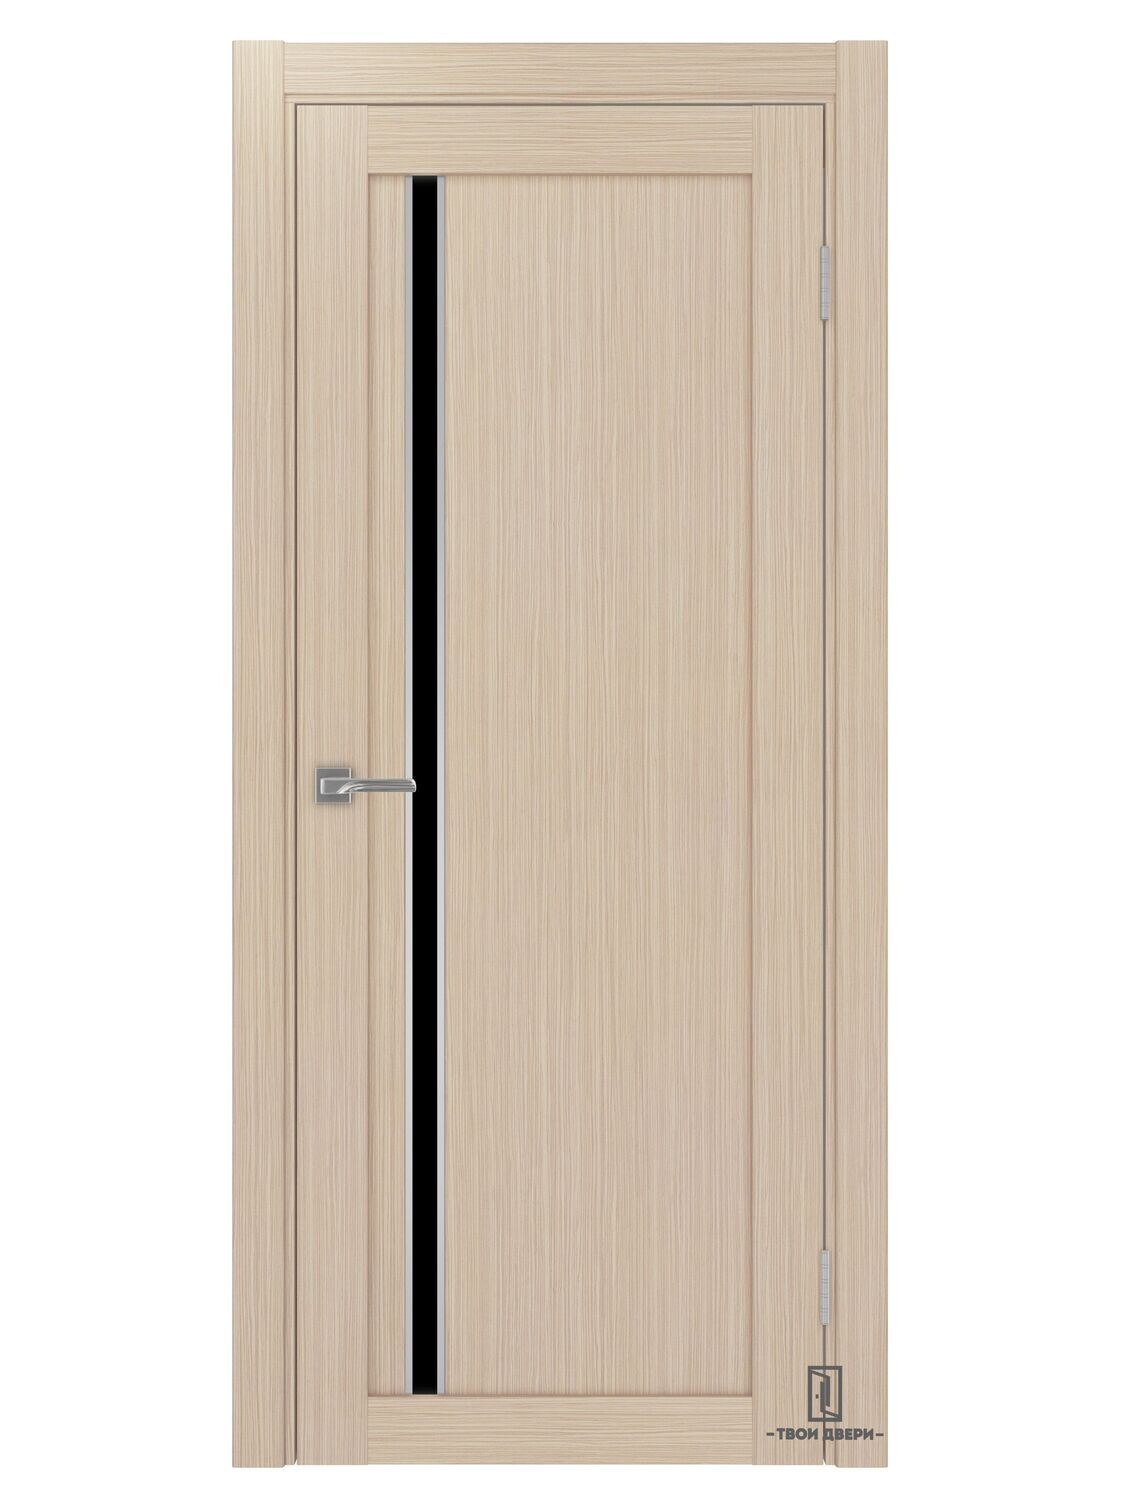 Дверь межкомнатная АПС 527 лакобель (молдинги), беленый дуб